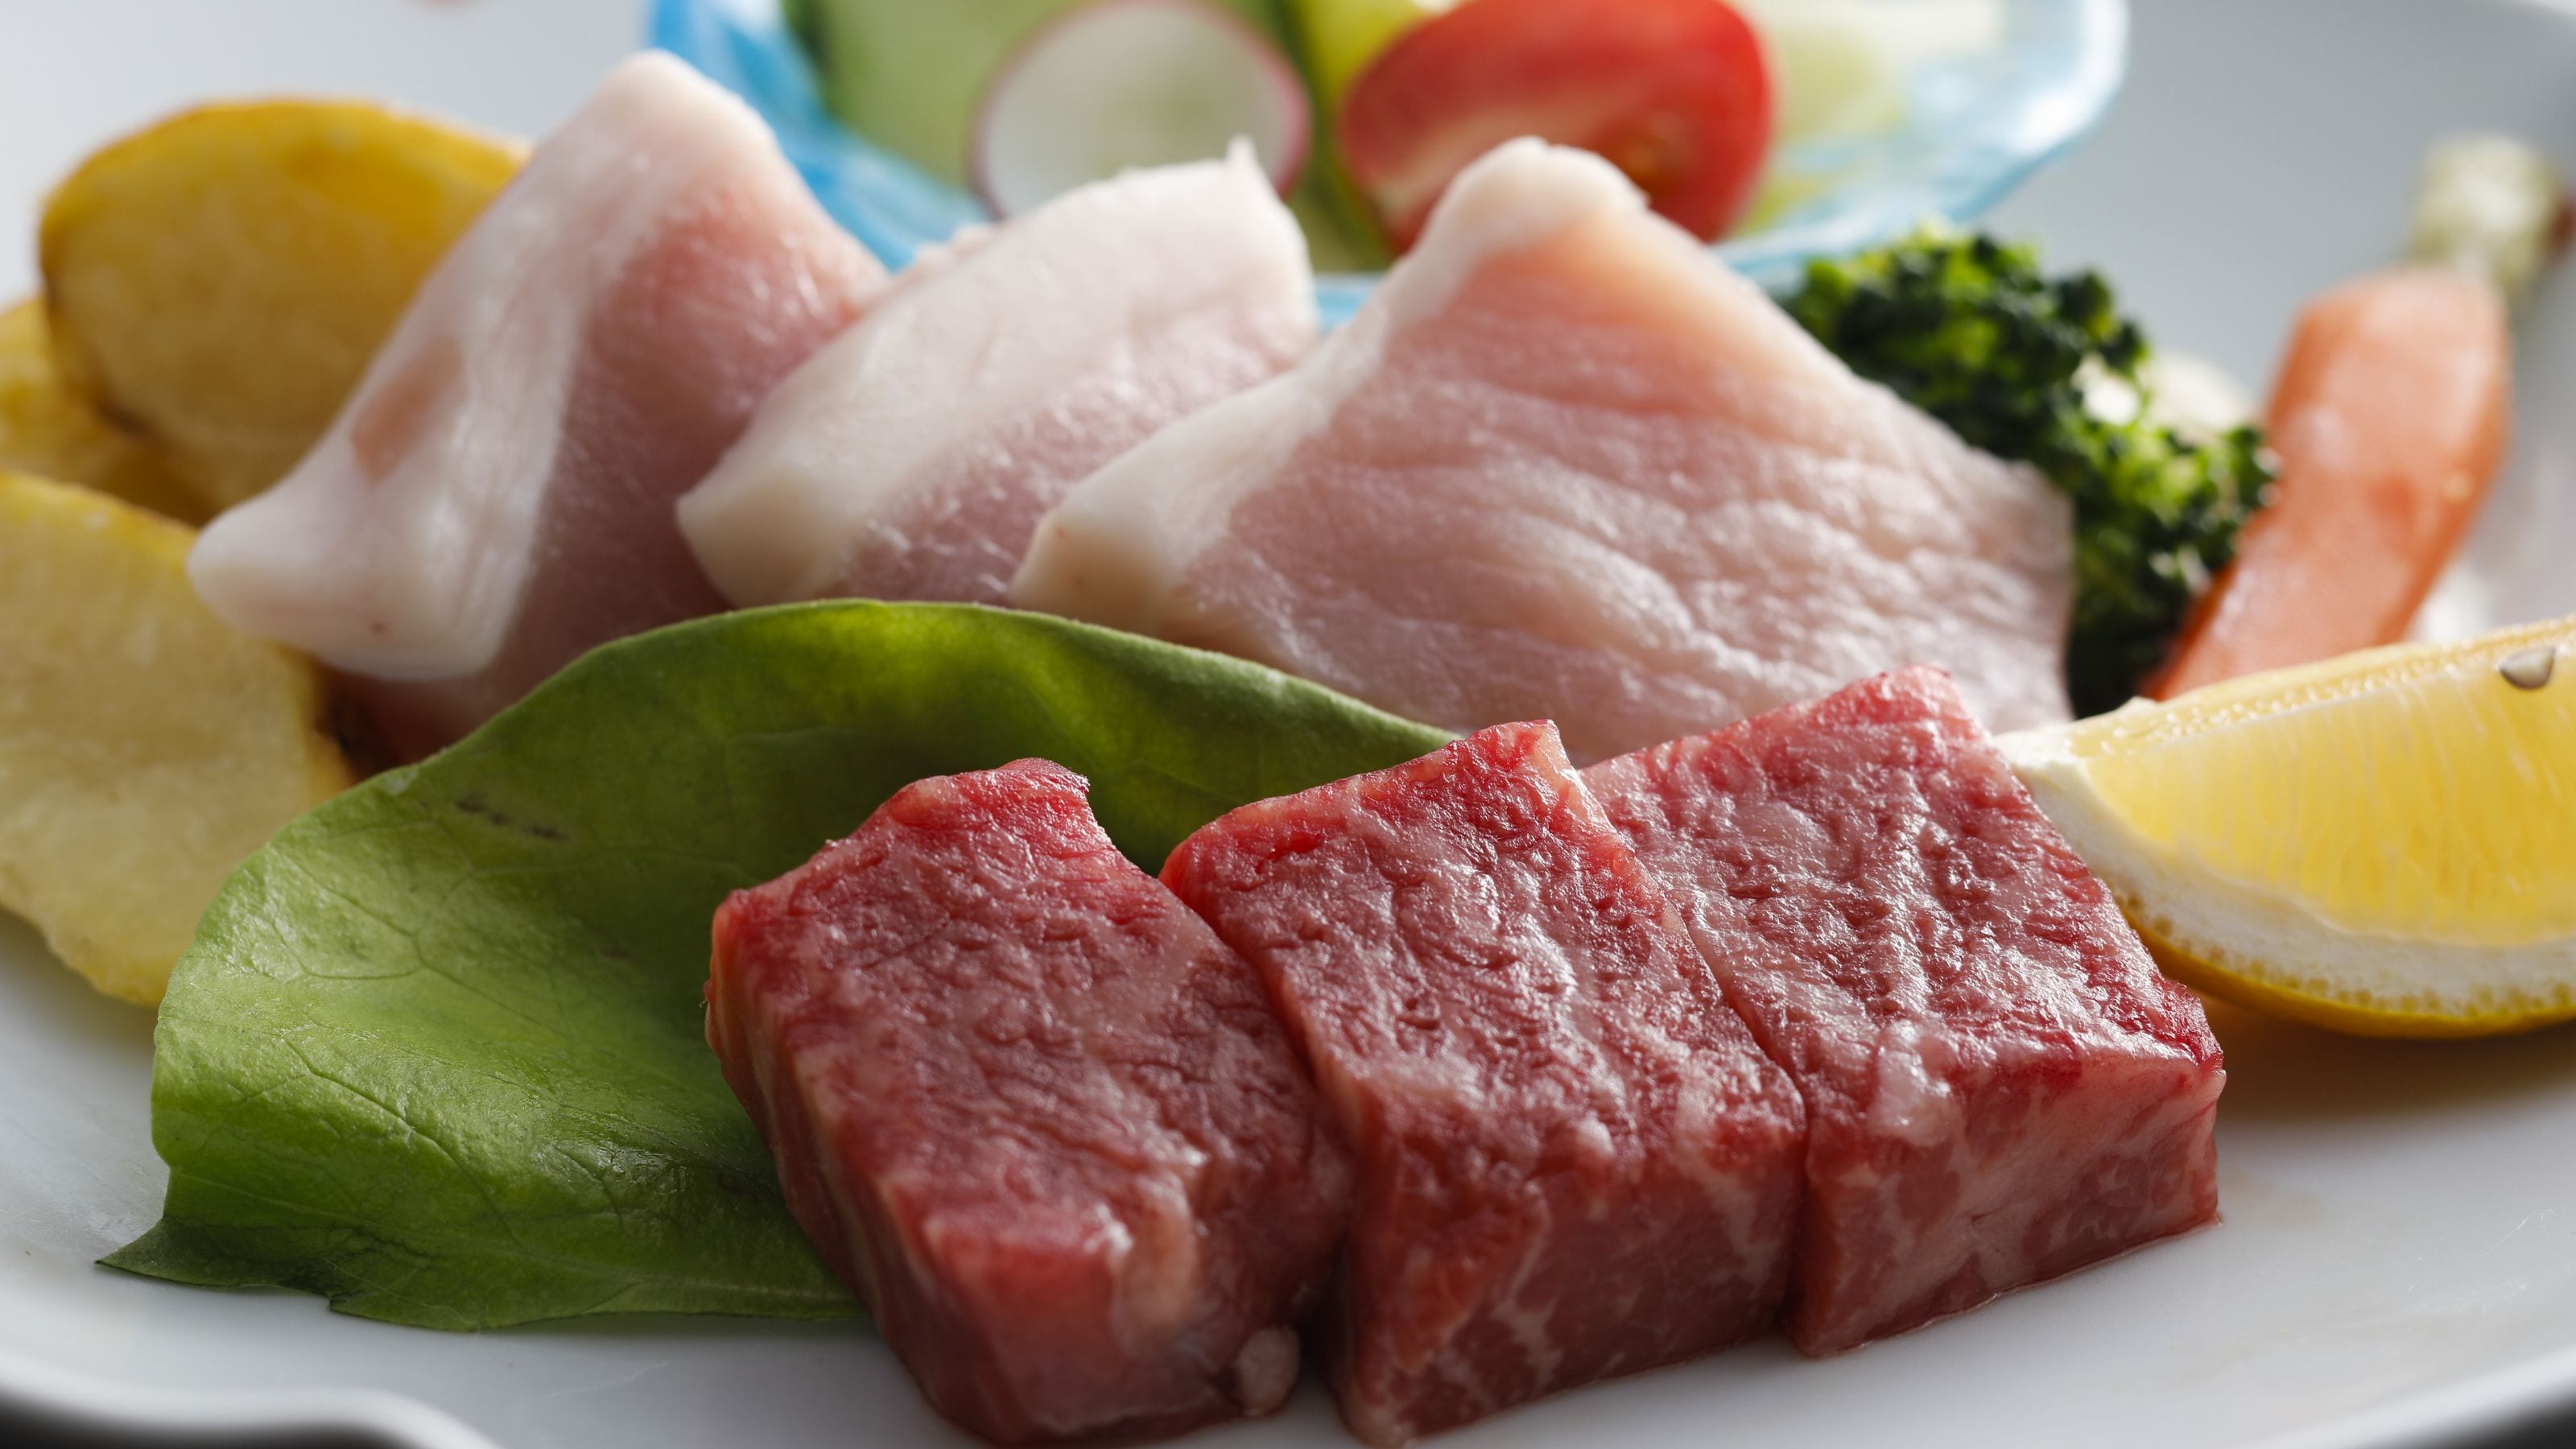 * 县级品牌伊予牛肉“丝味”和姬猪肉 W 牛排示例